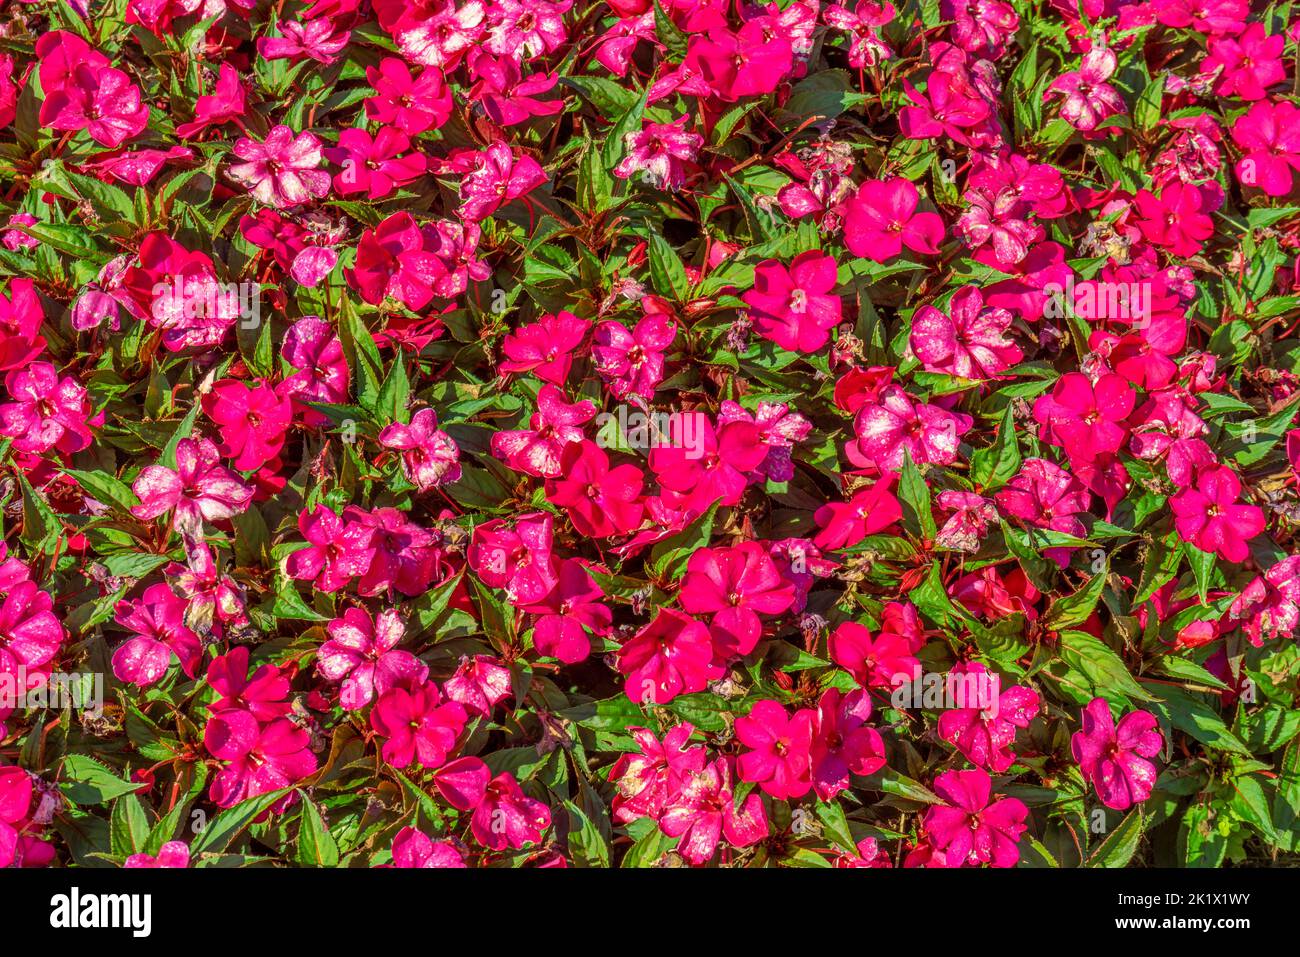 Un sacco di fiori Nuova Guinea impatiens fiori in un ambiente soleggiato Foto Stock